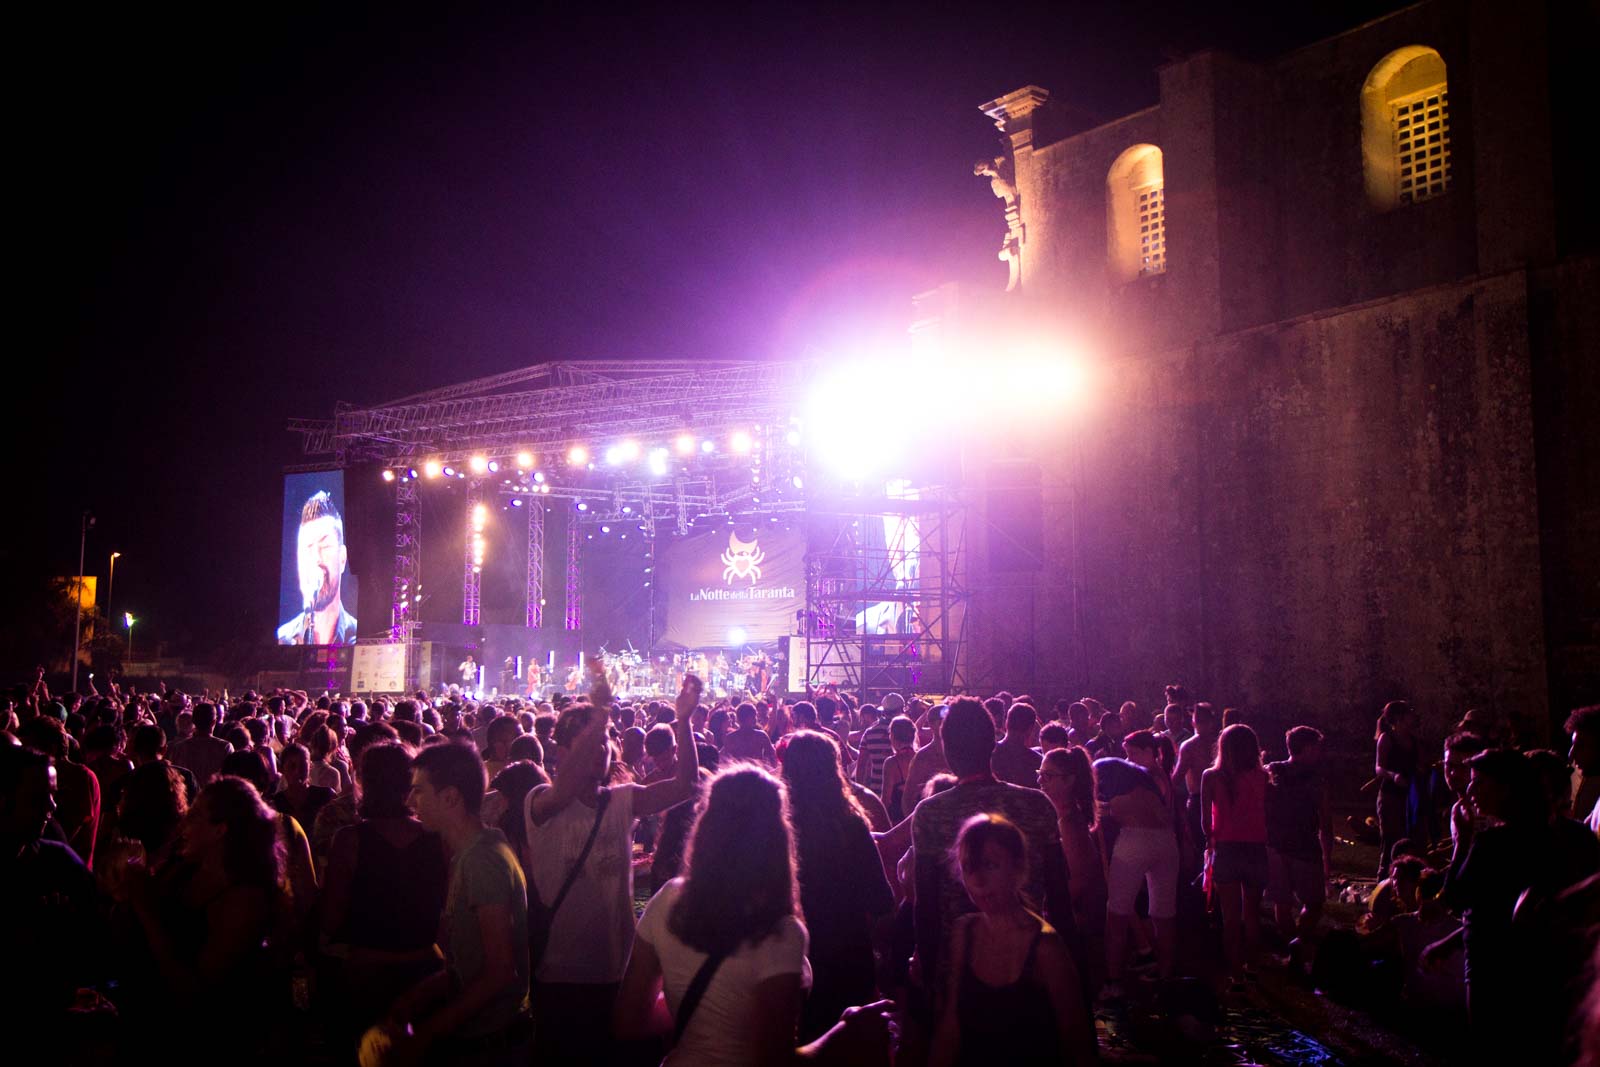 La Notte della Taranta festival, Puglia, Italy